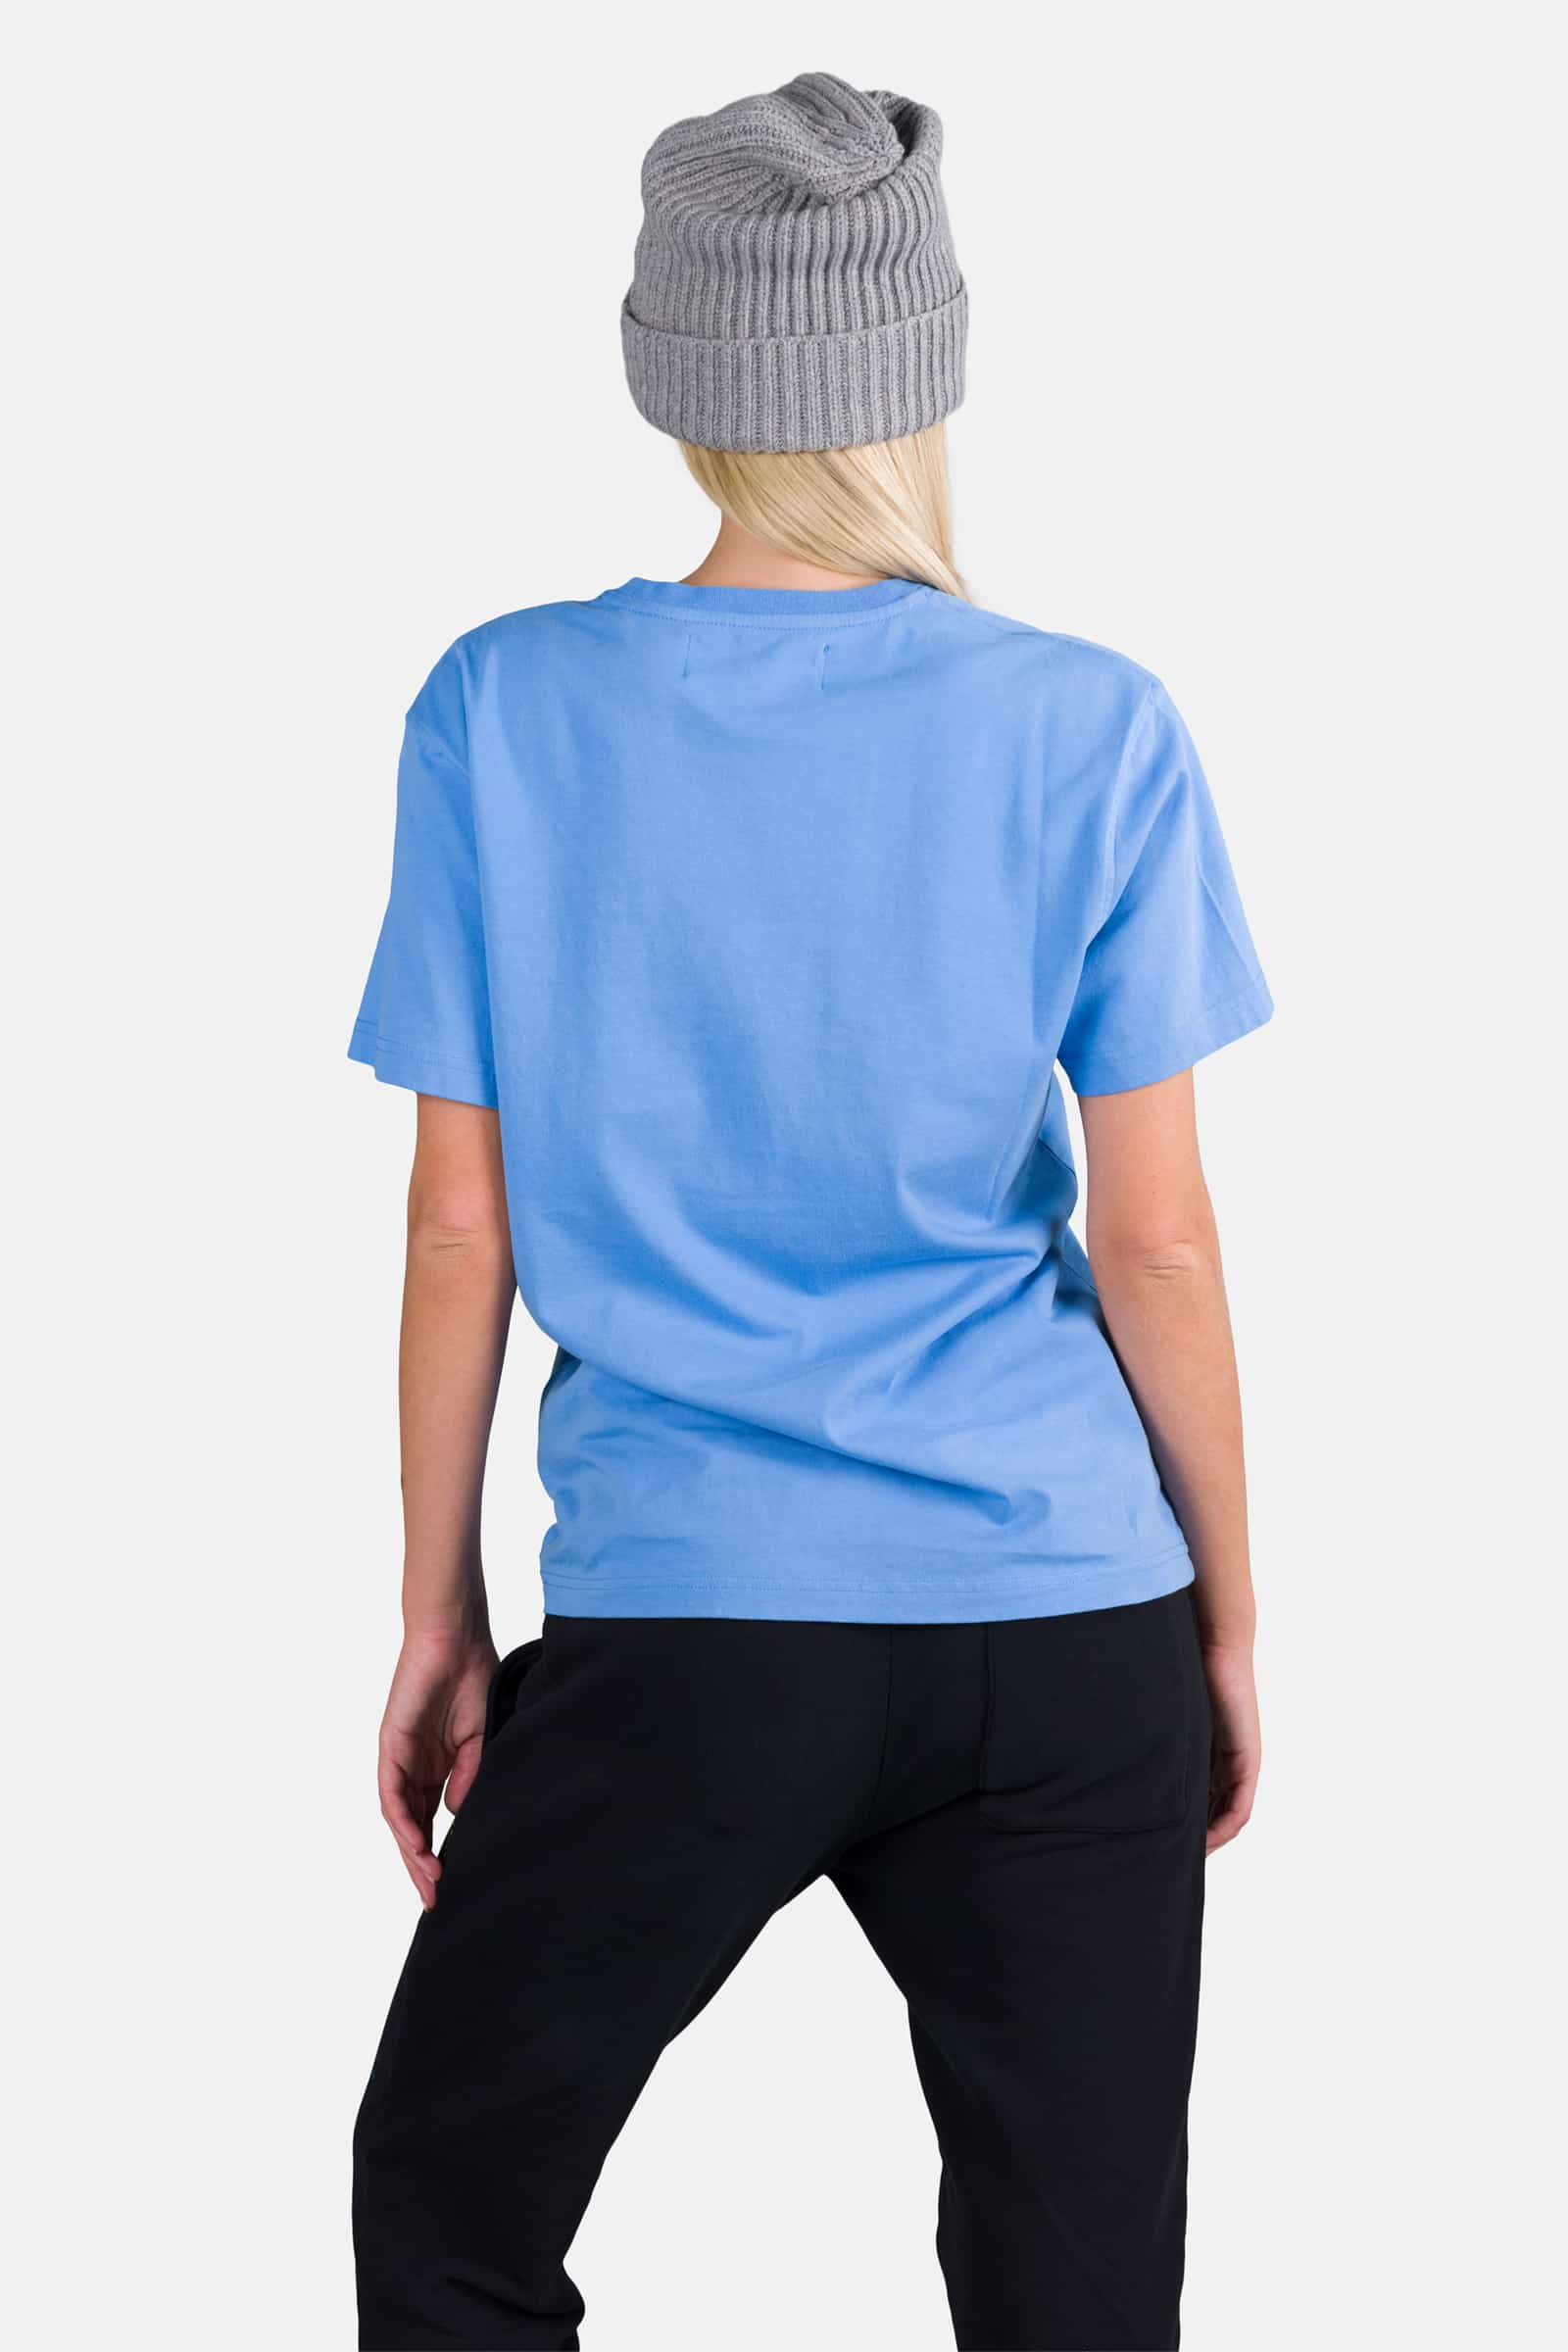 SKULL TEE - SKY BLUE - Hydrogen - Luxury Sportwear